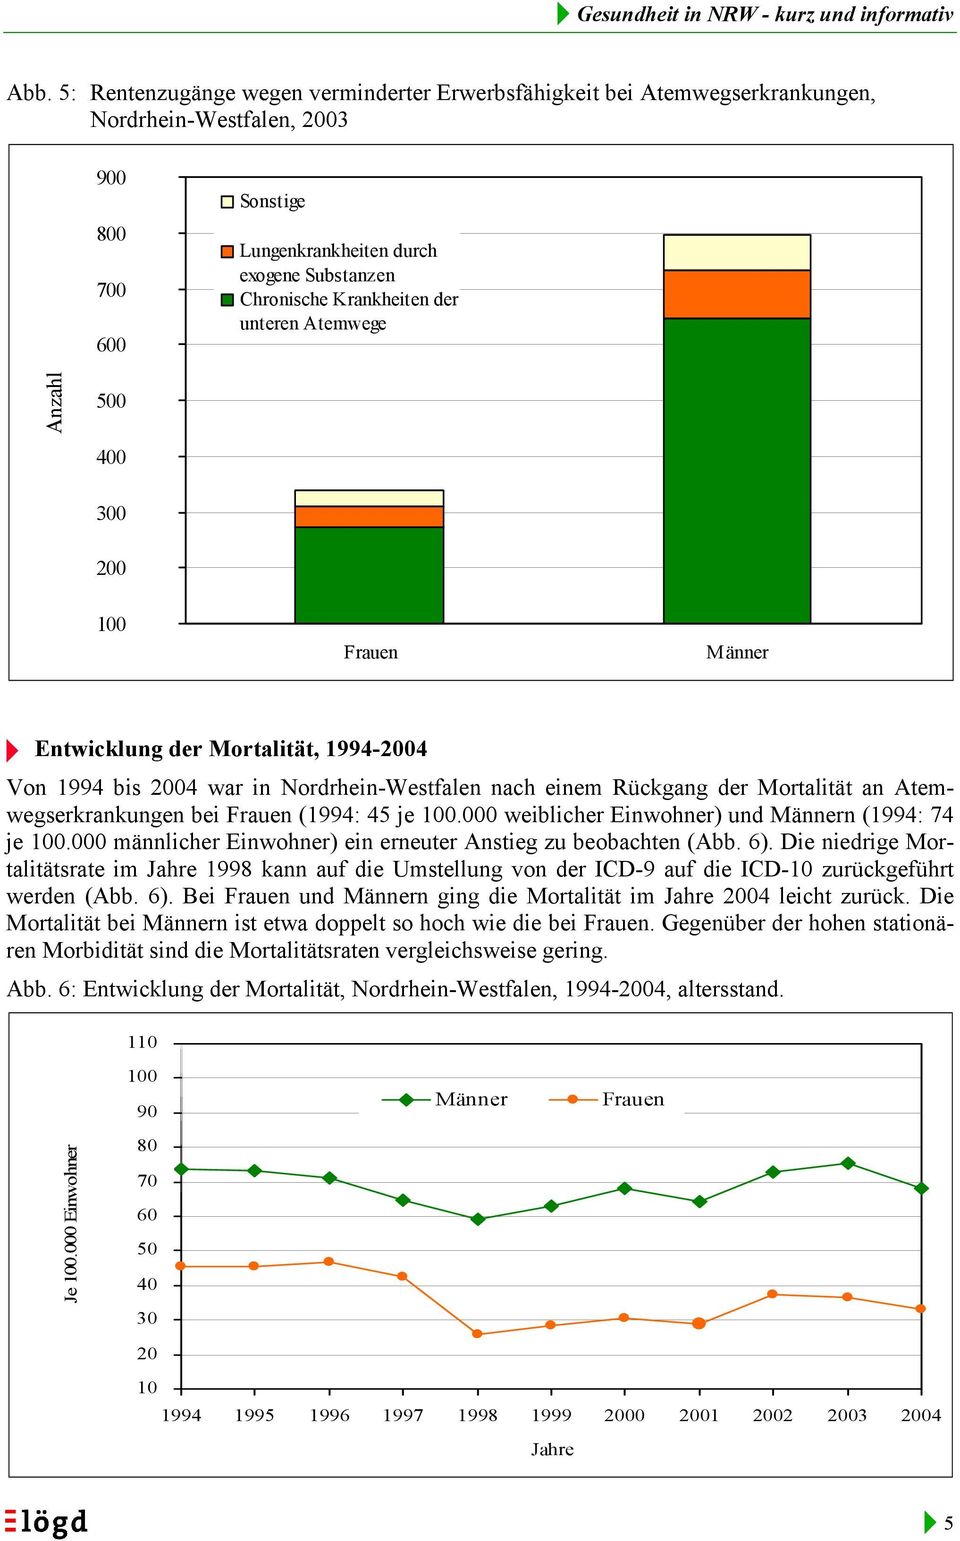 1994-2004 Von 1994 bis 2004 war in Nordrhein-Westfalen nach einem Rückgang der Mortalität an Atemwegserkrankungen bei (1994: 45 je 100.000 weiblicher Einwohner) und n (1994: 74 je 100.